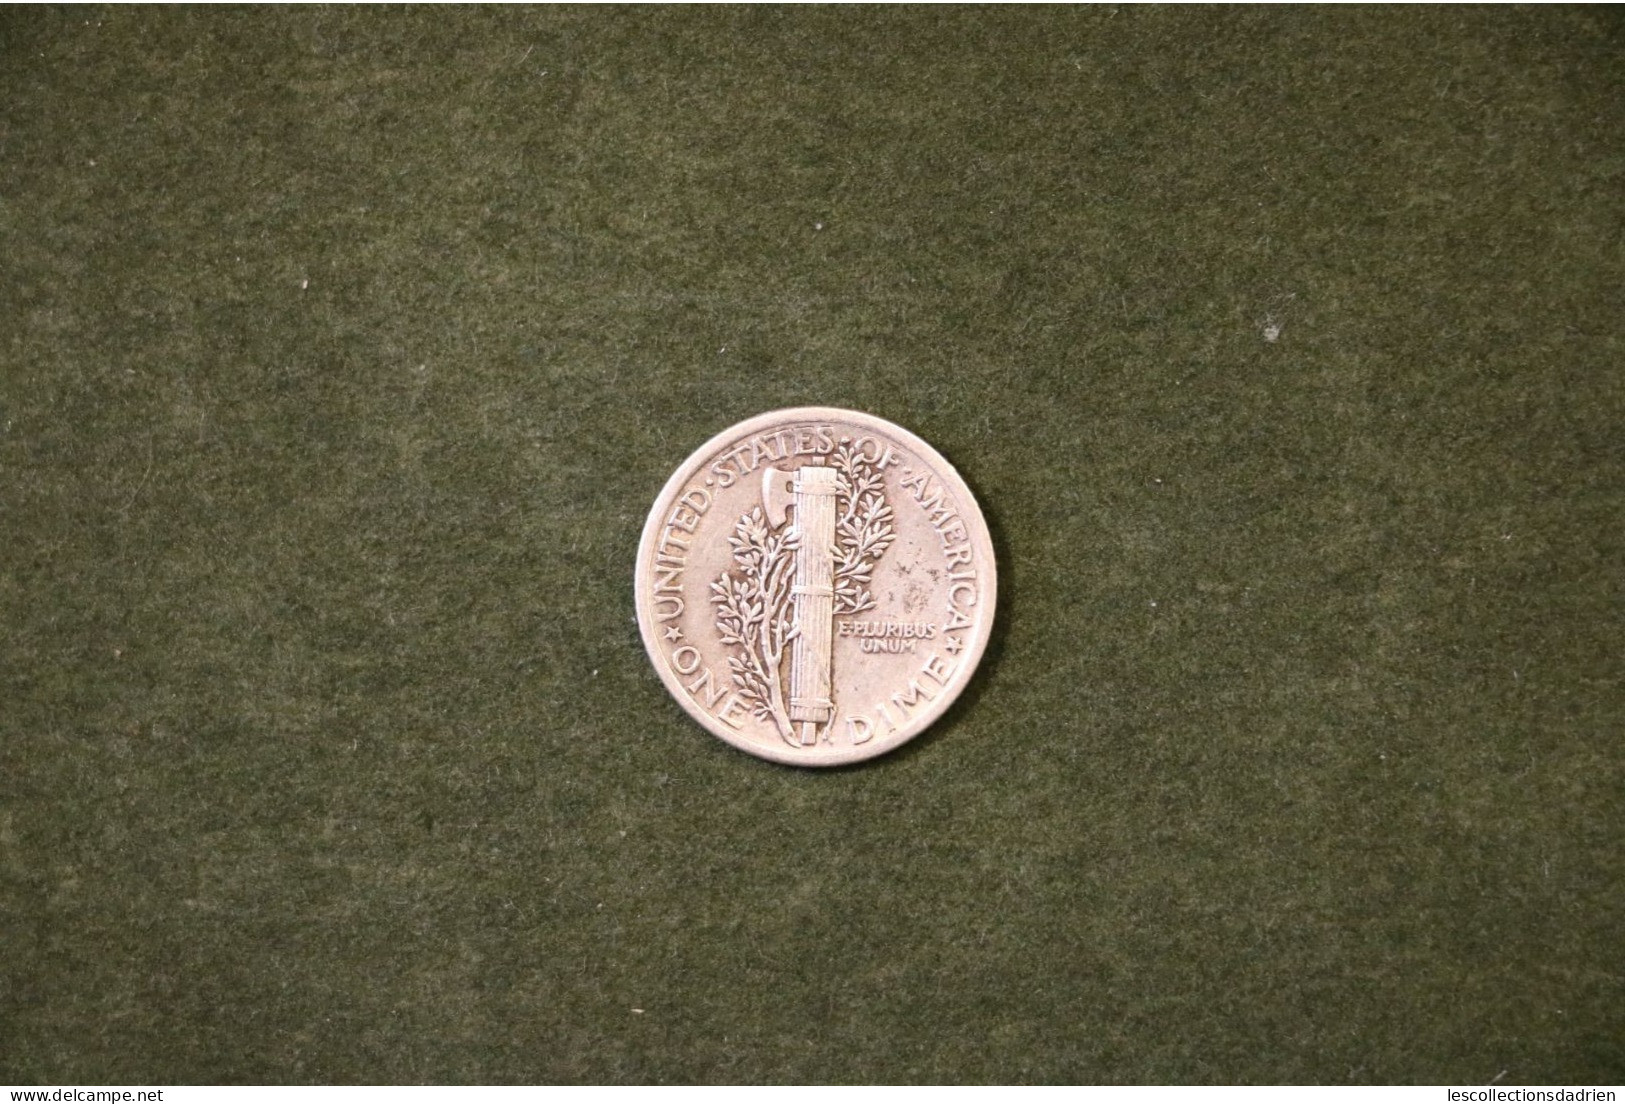 Pièce En Argent Etats-Unis 10 Cents 1917 En Très Bon état  - US Silver Coin Mercury Dime - 1916-1945: Mercury